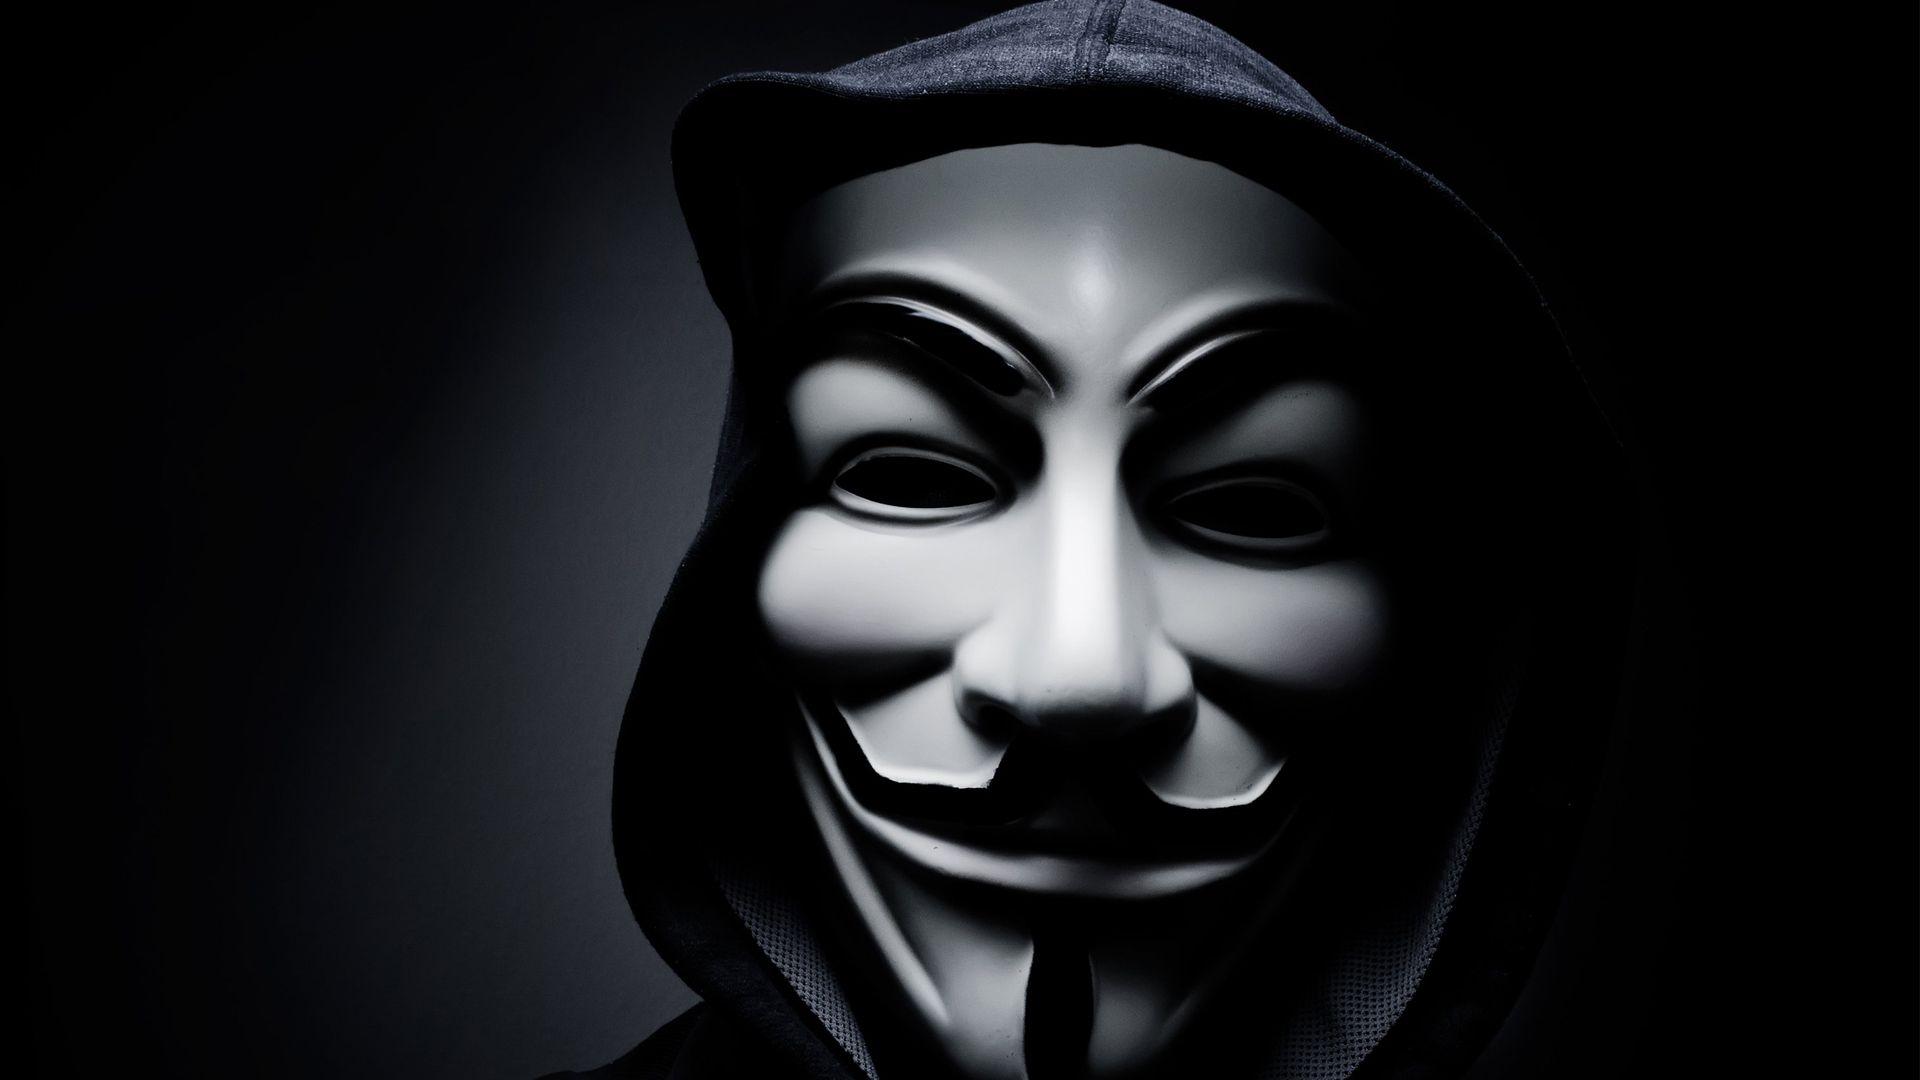 Image of hacker wearing mask